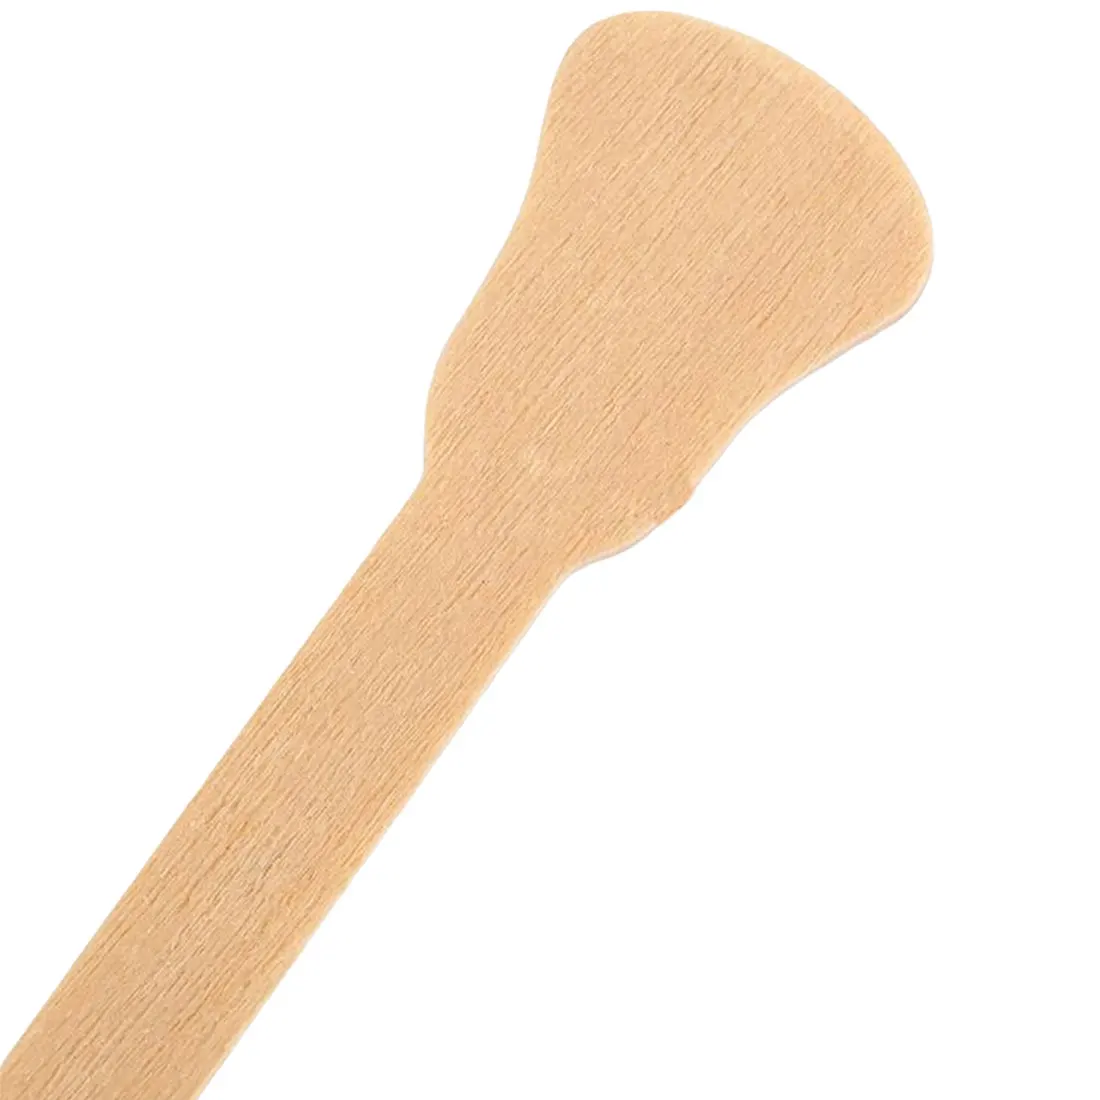 50 шт. деревянные восковые палочки для депиляции, одноразовые палочки, крем для удаления волос на коже тела, инструменты для перемешивания лака для ногтей